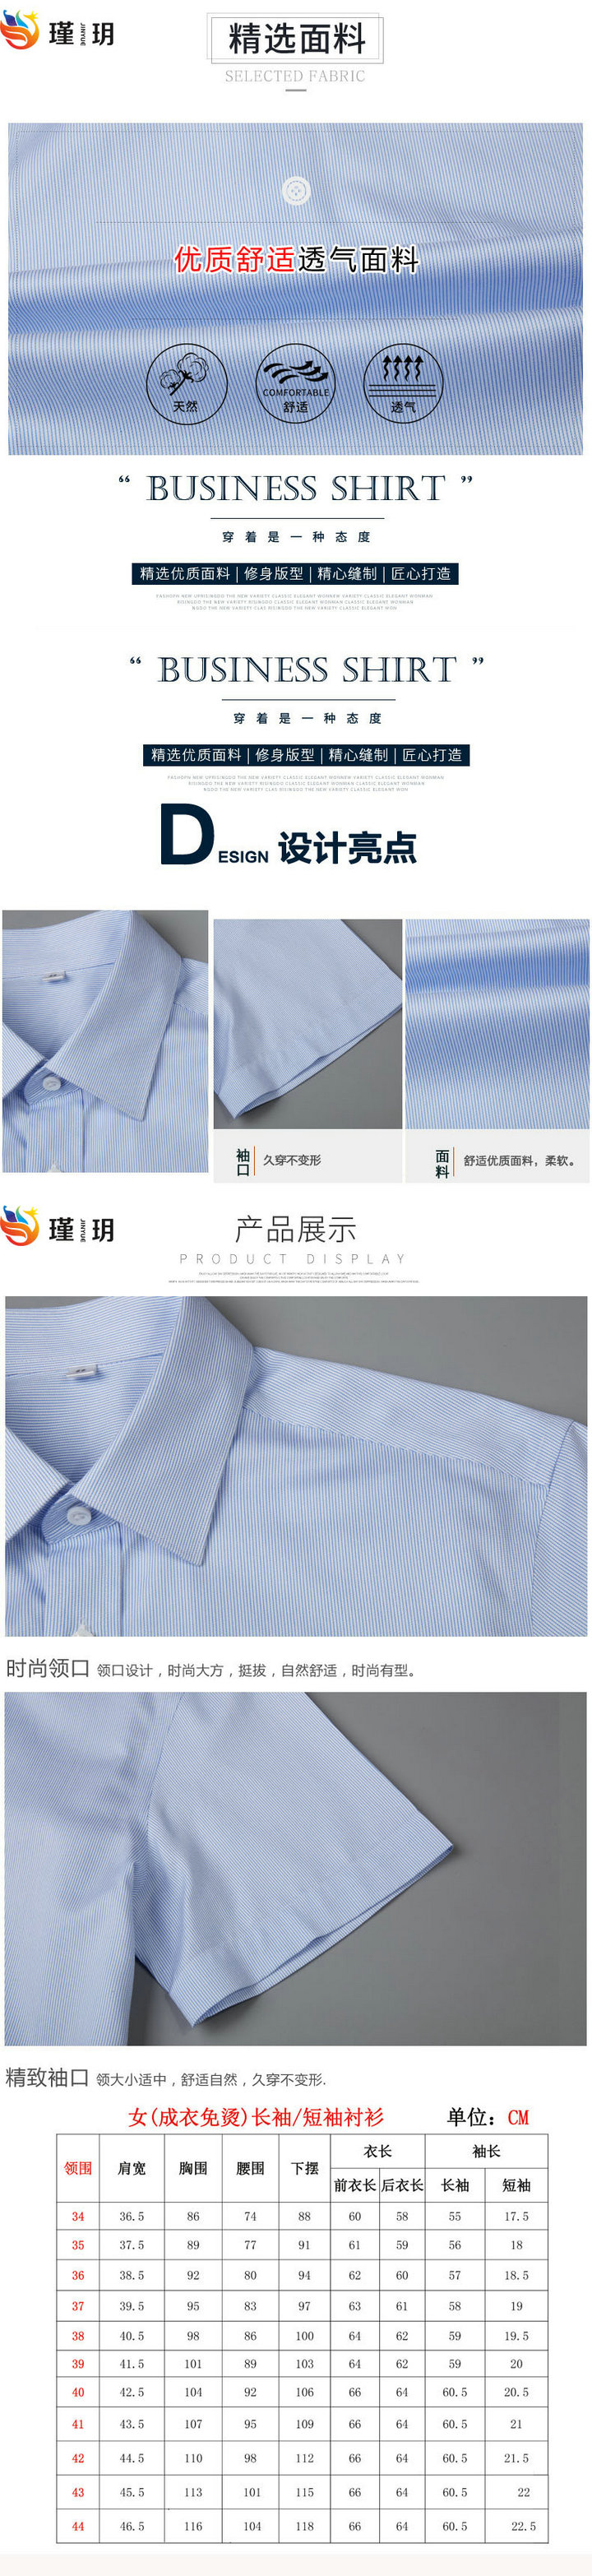 武汉衬衫定制,武汉衬衫厂家,武汉定做衬衫(图2)